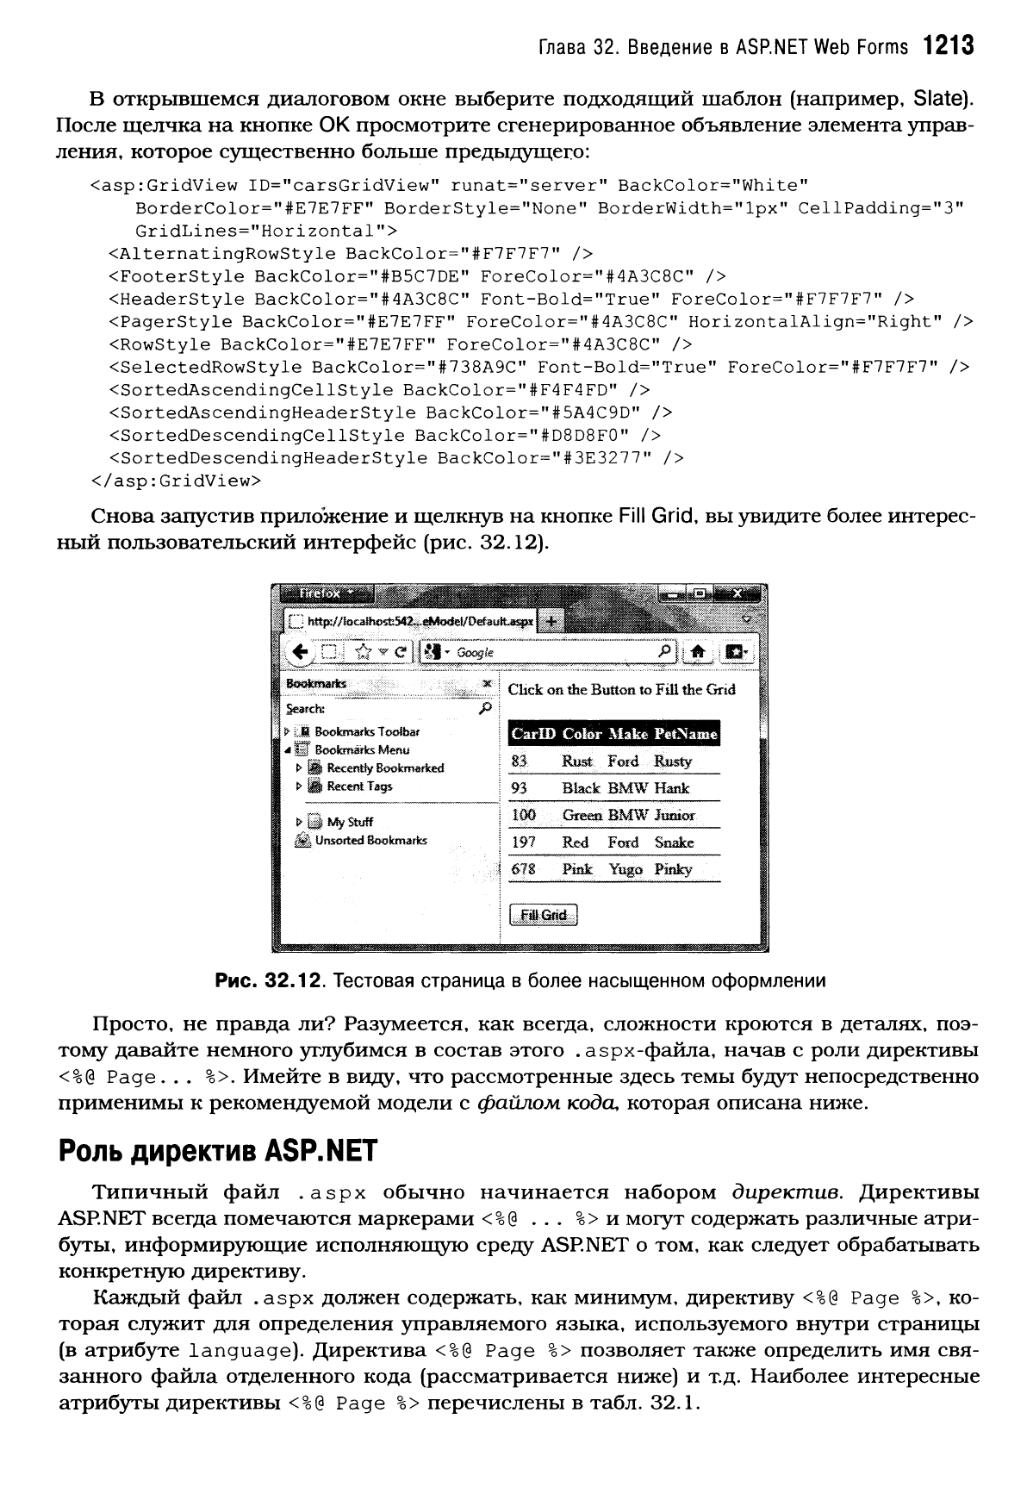 Роль директив ASP.NET